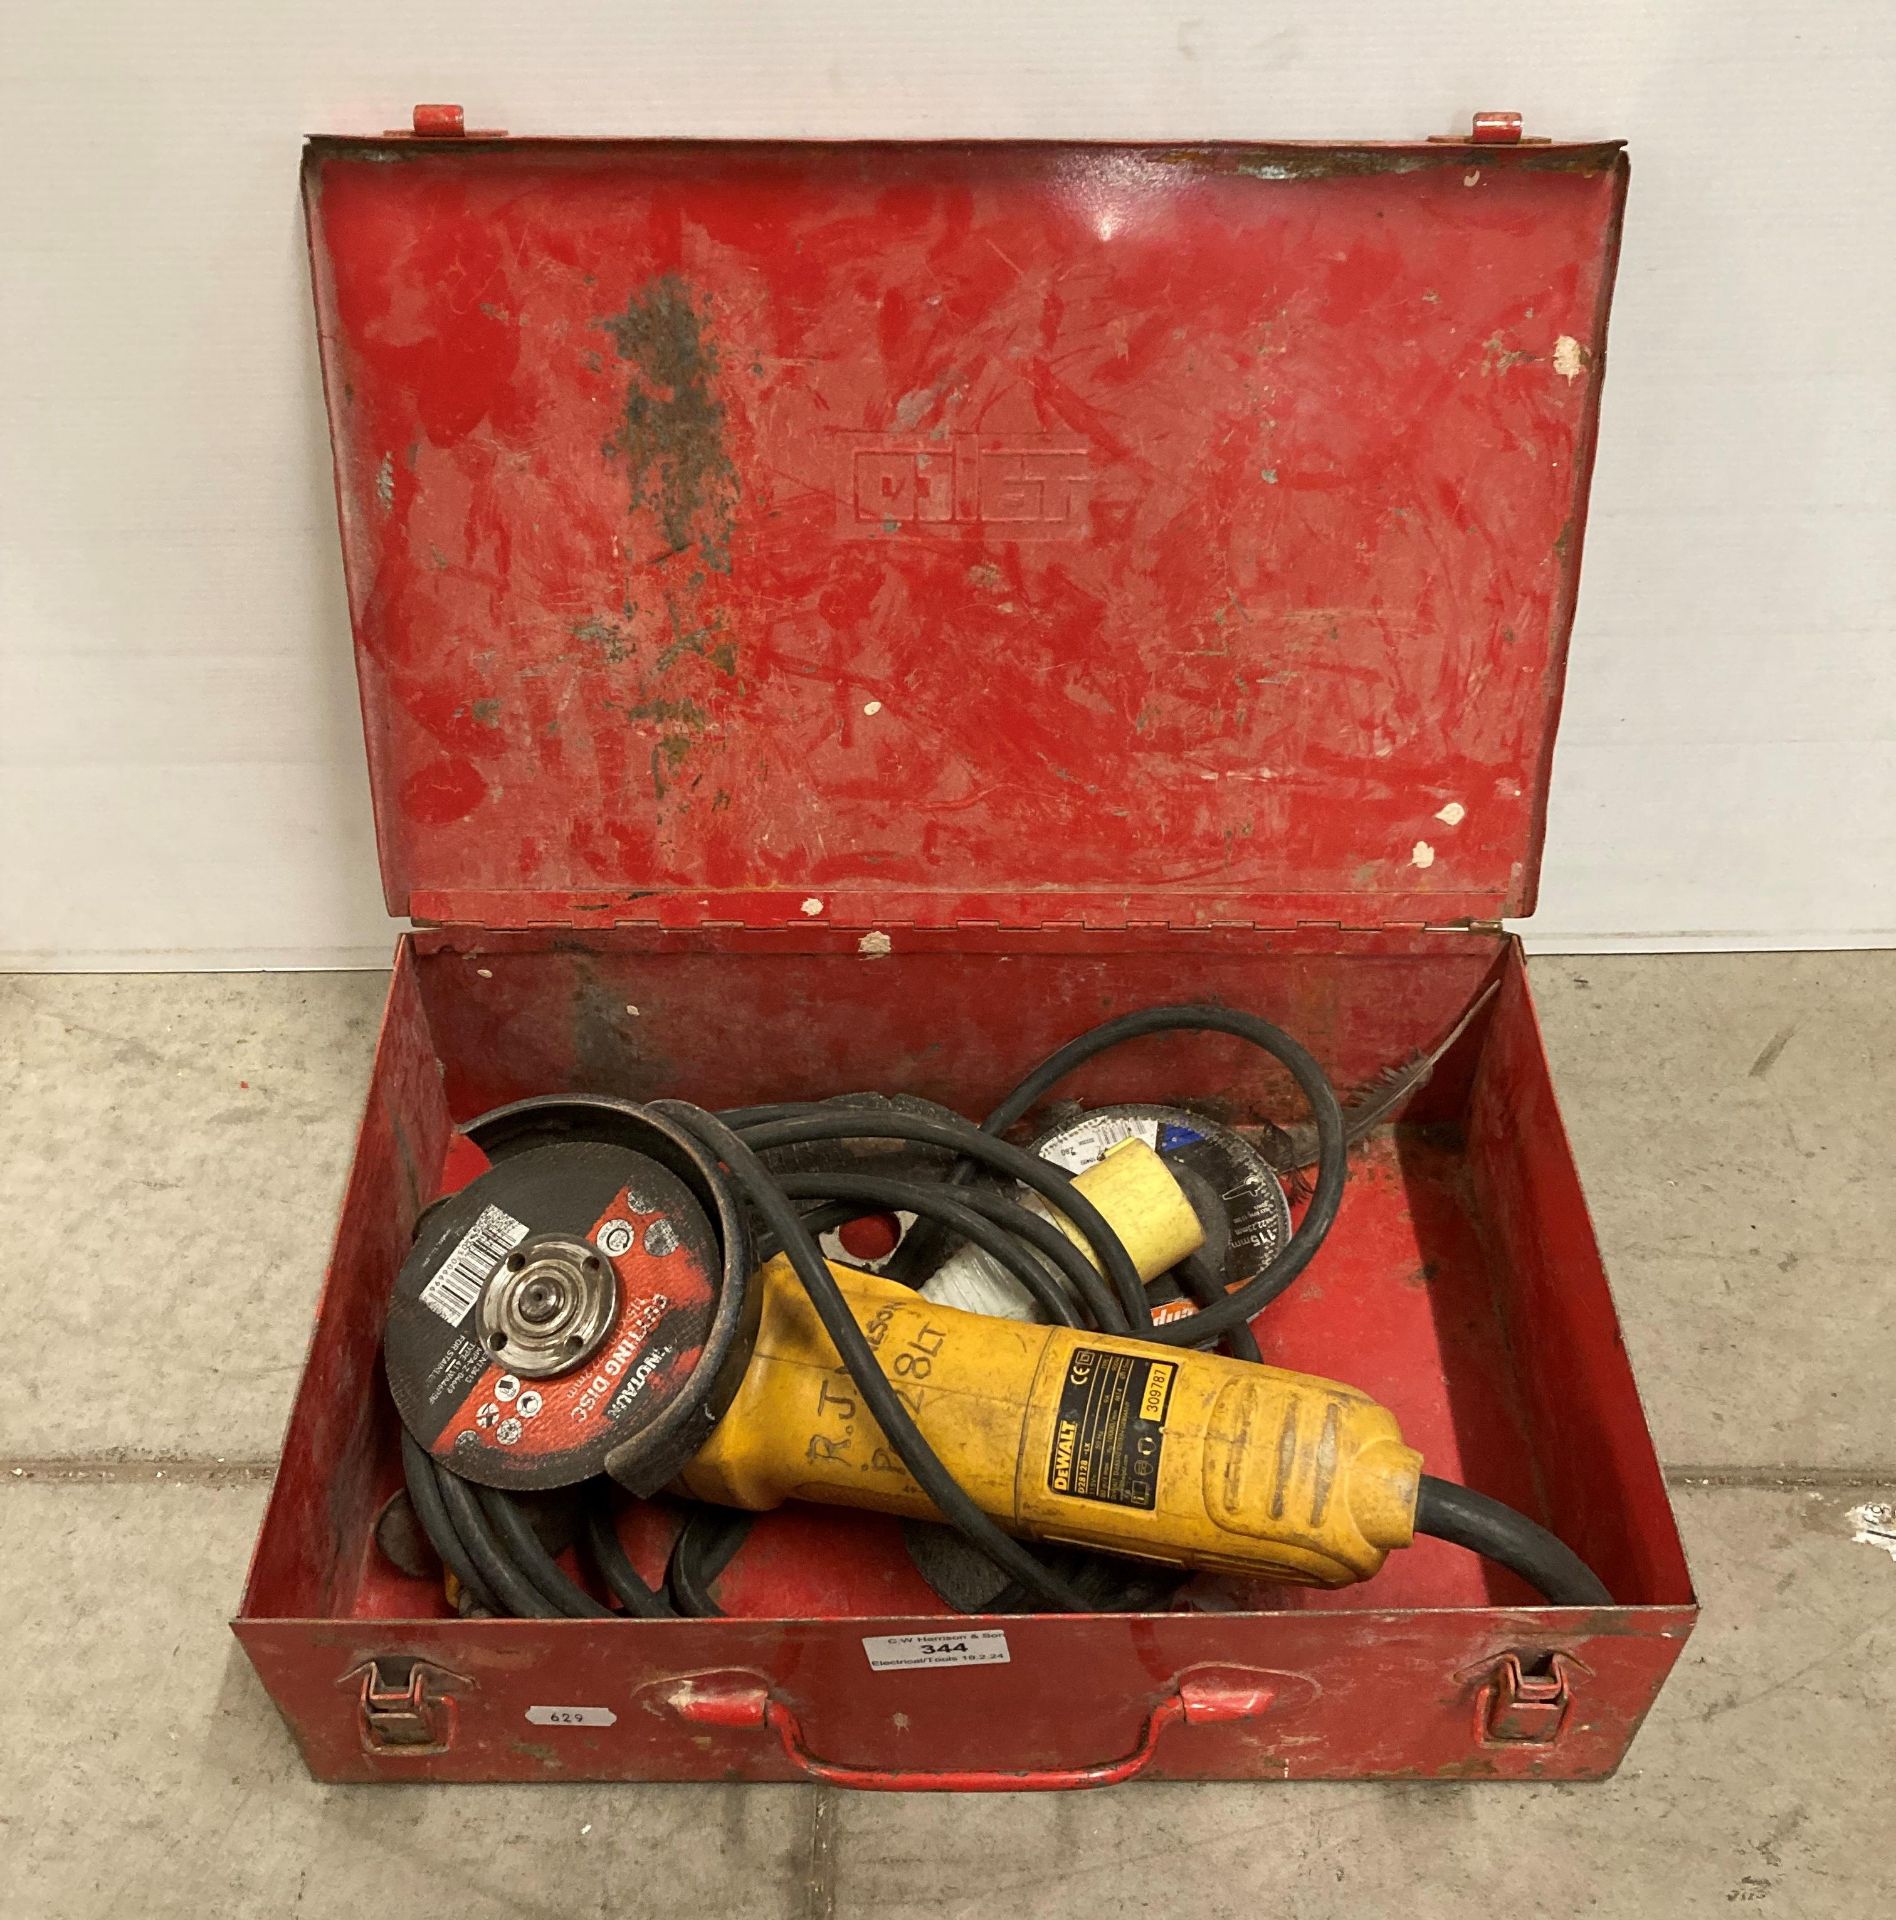 DeWalt D28128 - 110v electric grinder in case (saleroom location: G07)